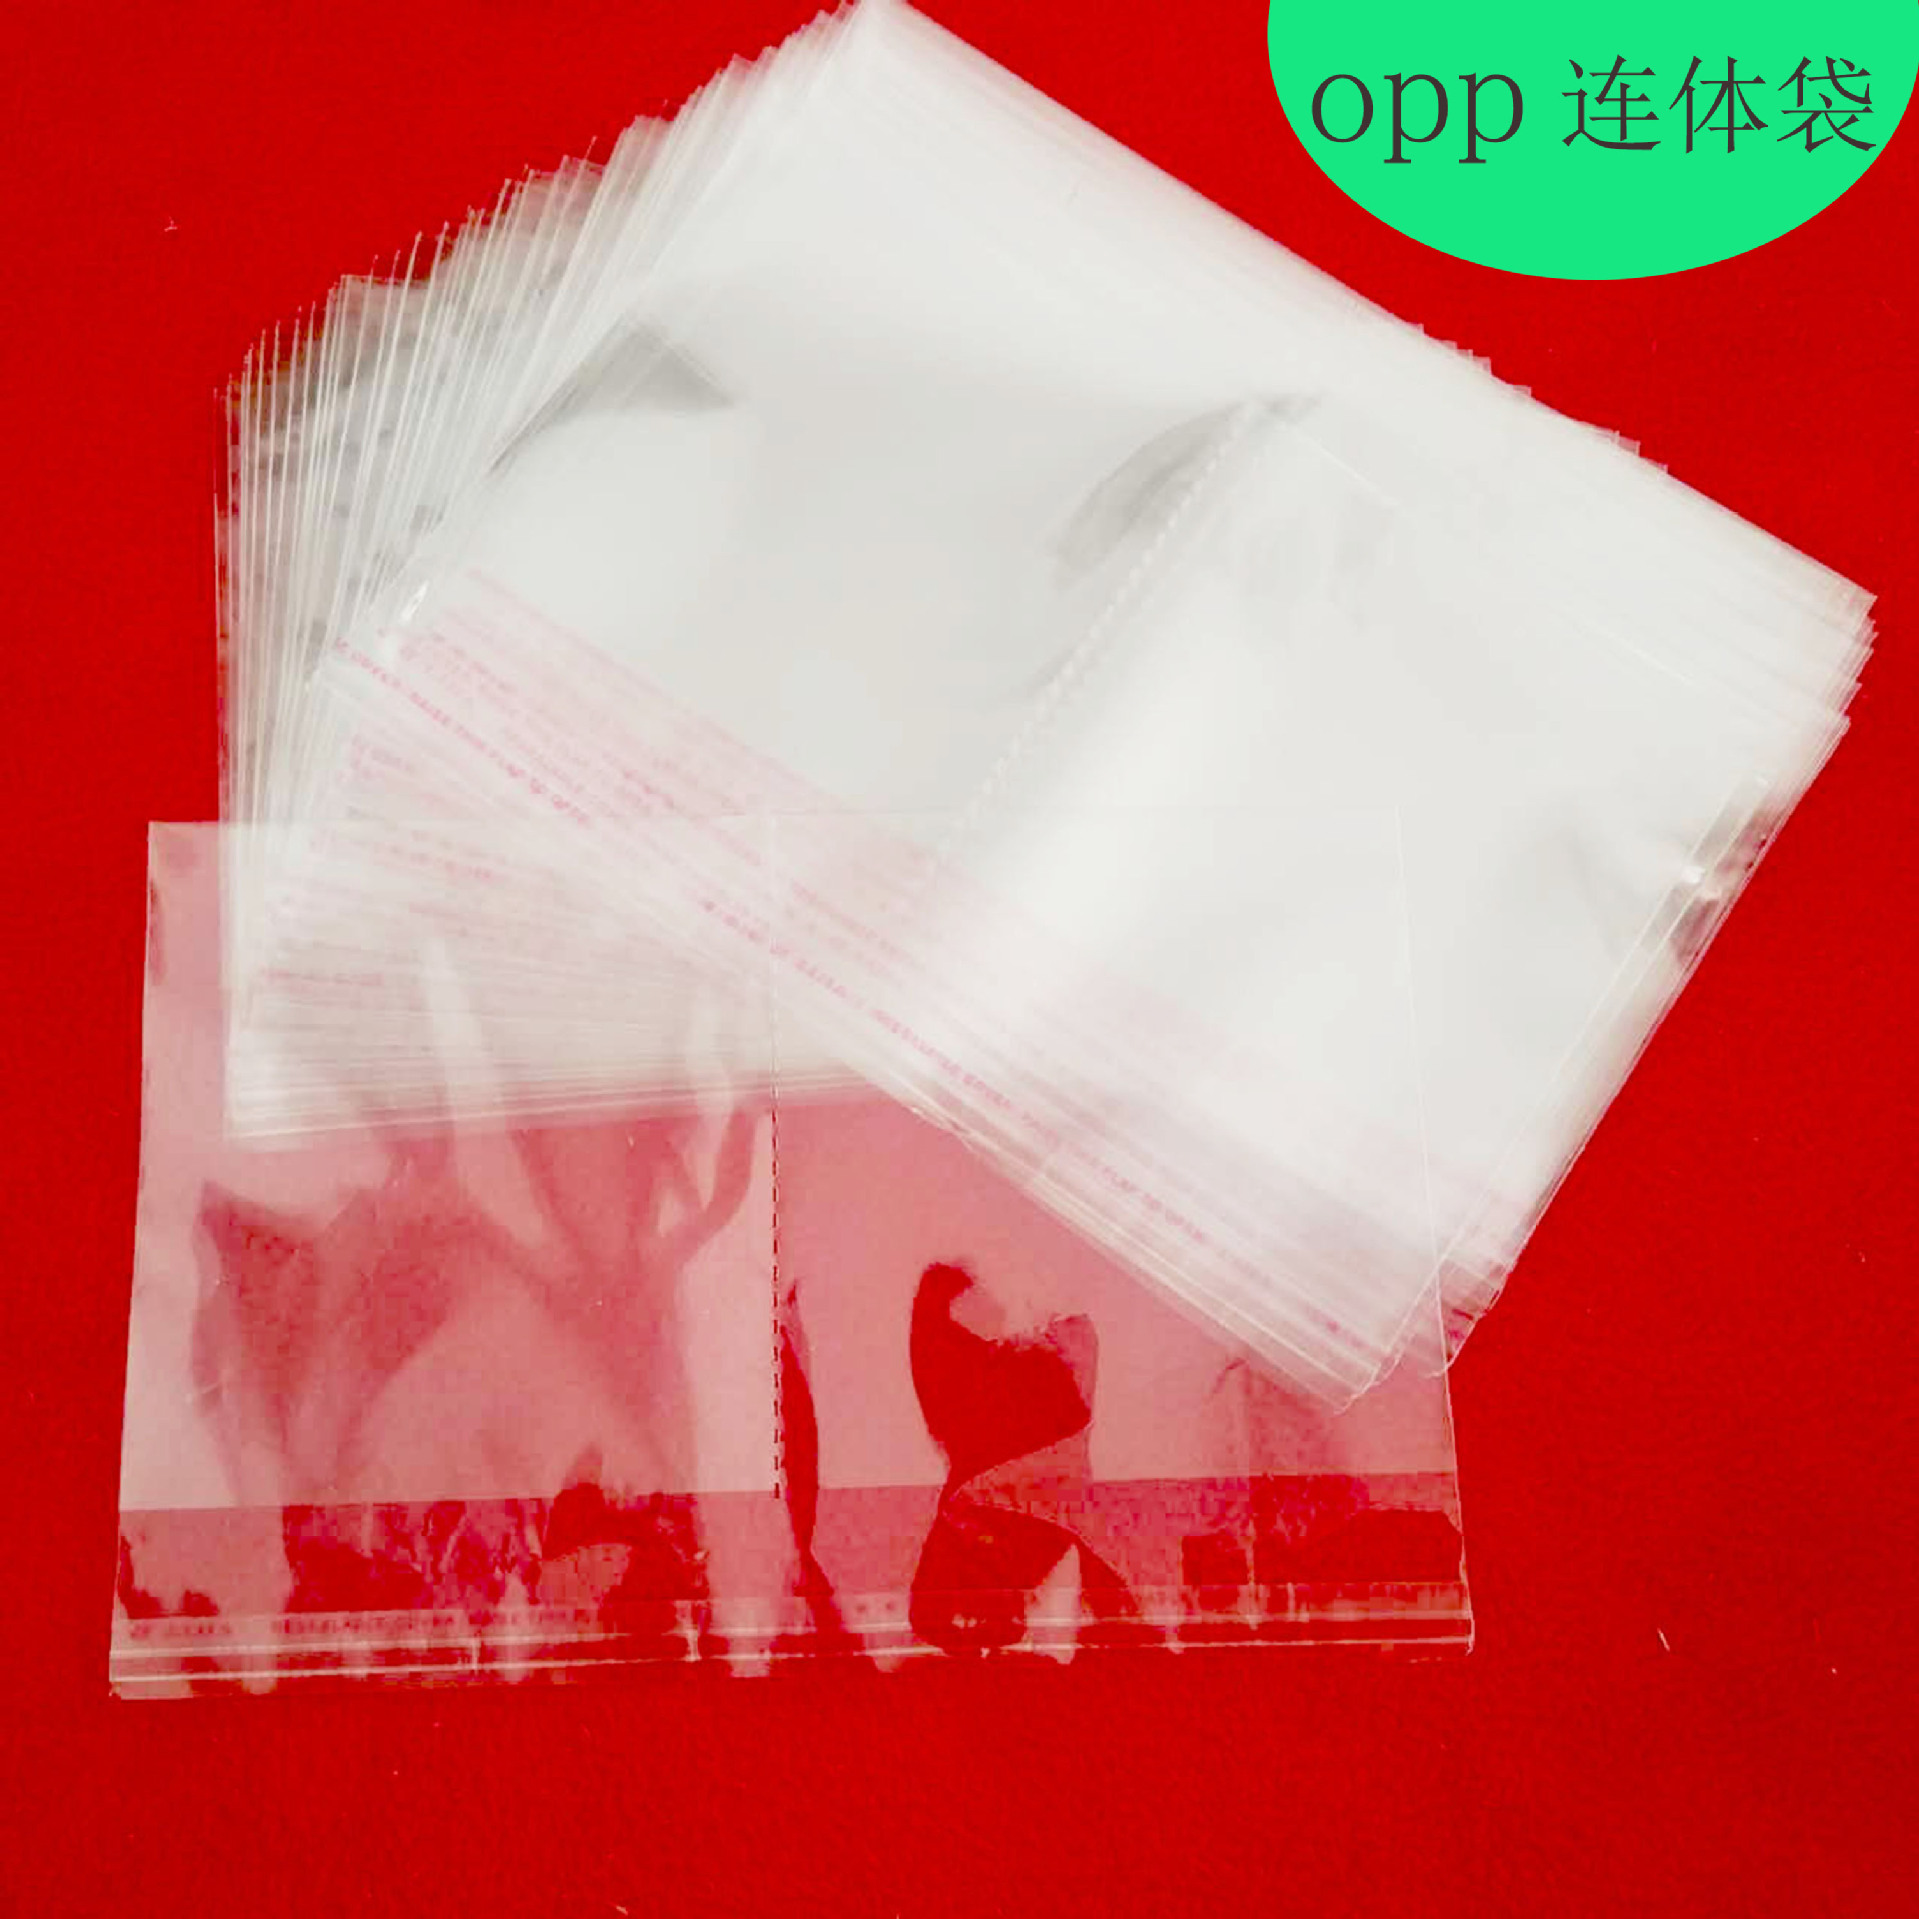 透明塑料包装袋可印刷任何 厂家加工定制opp连体袋 卡头袋身图案